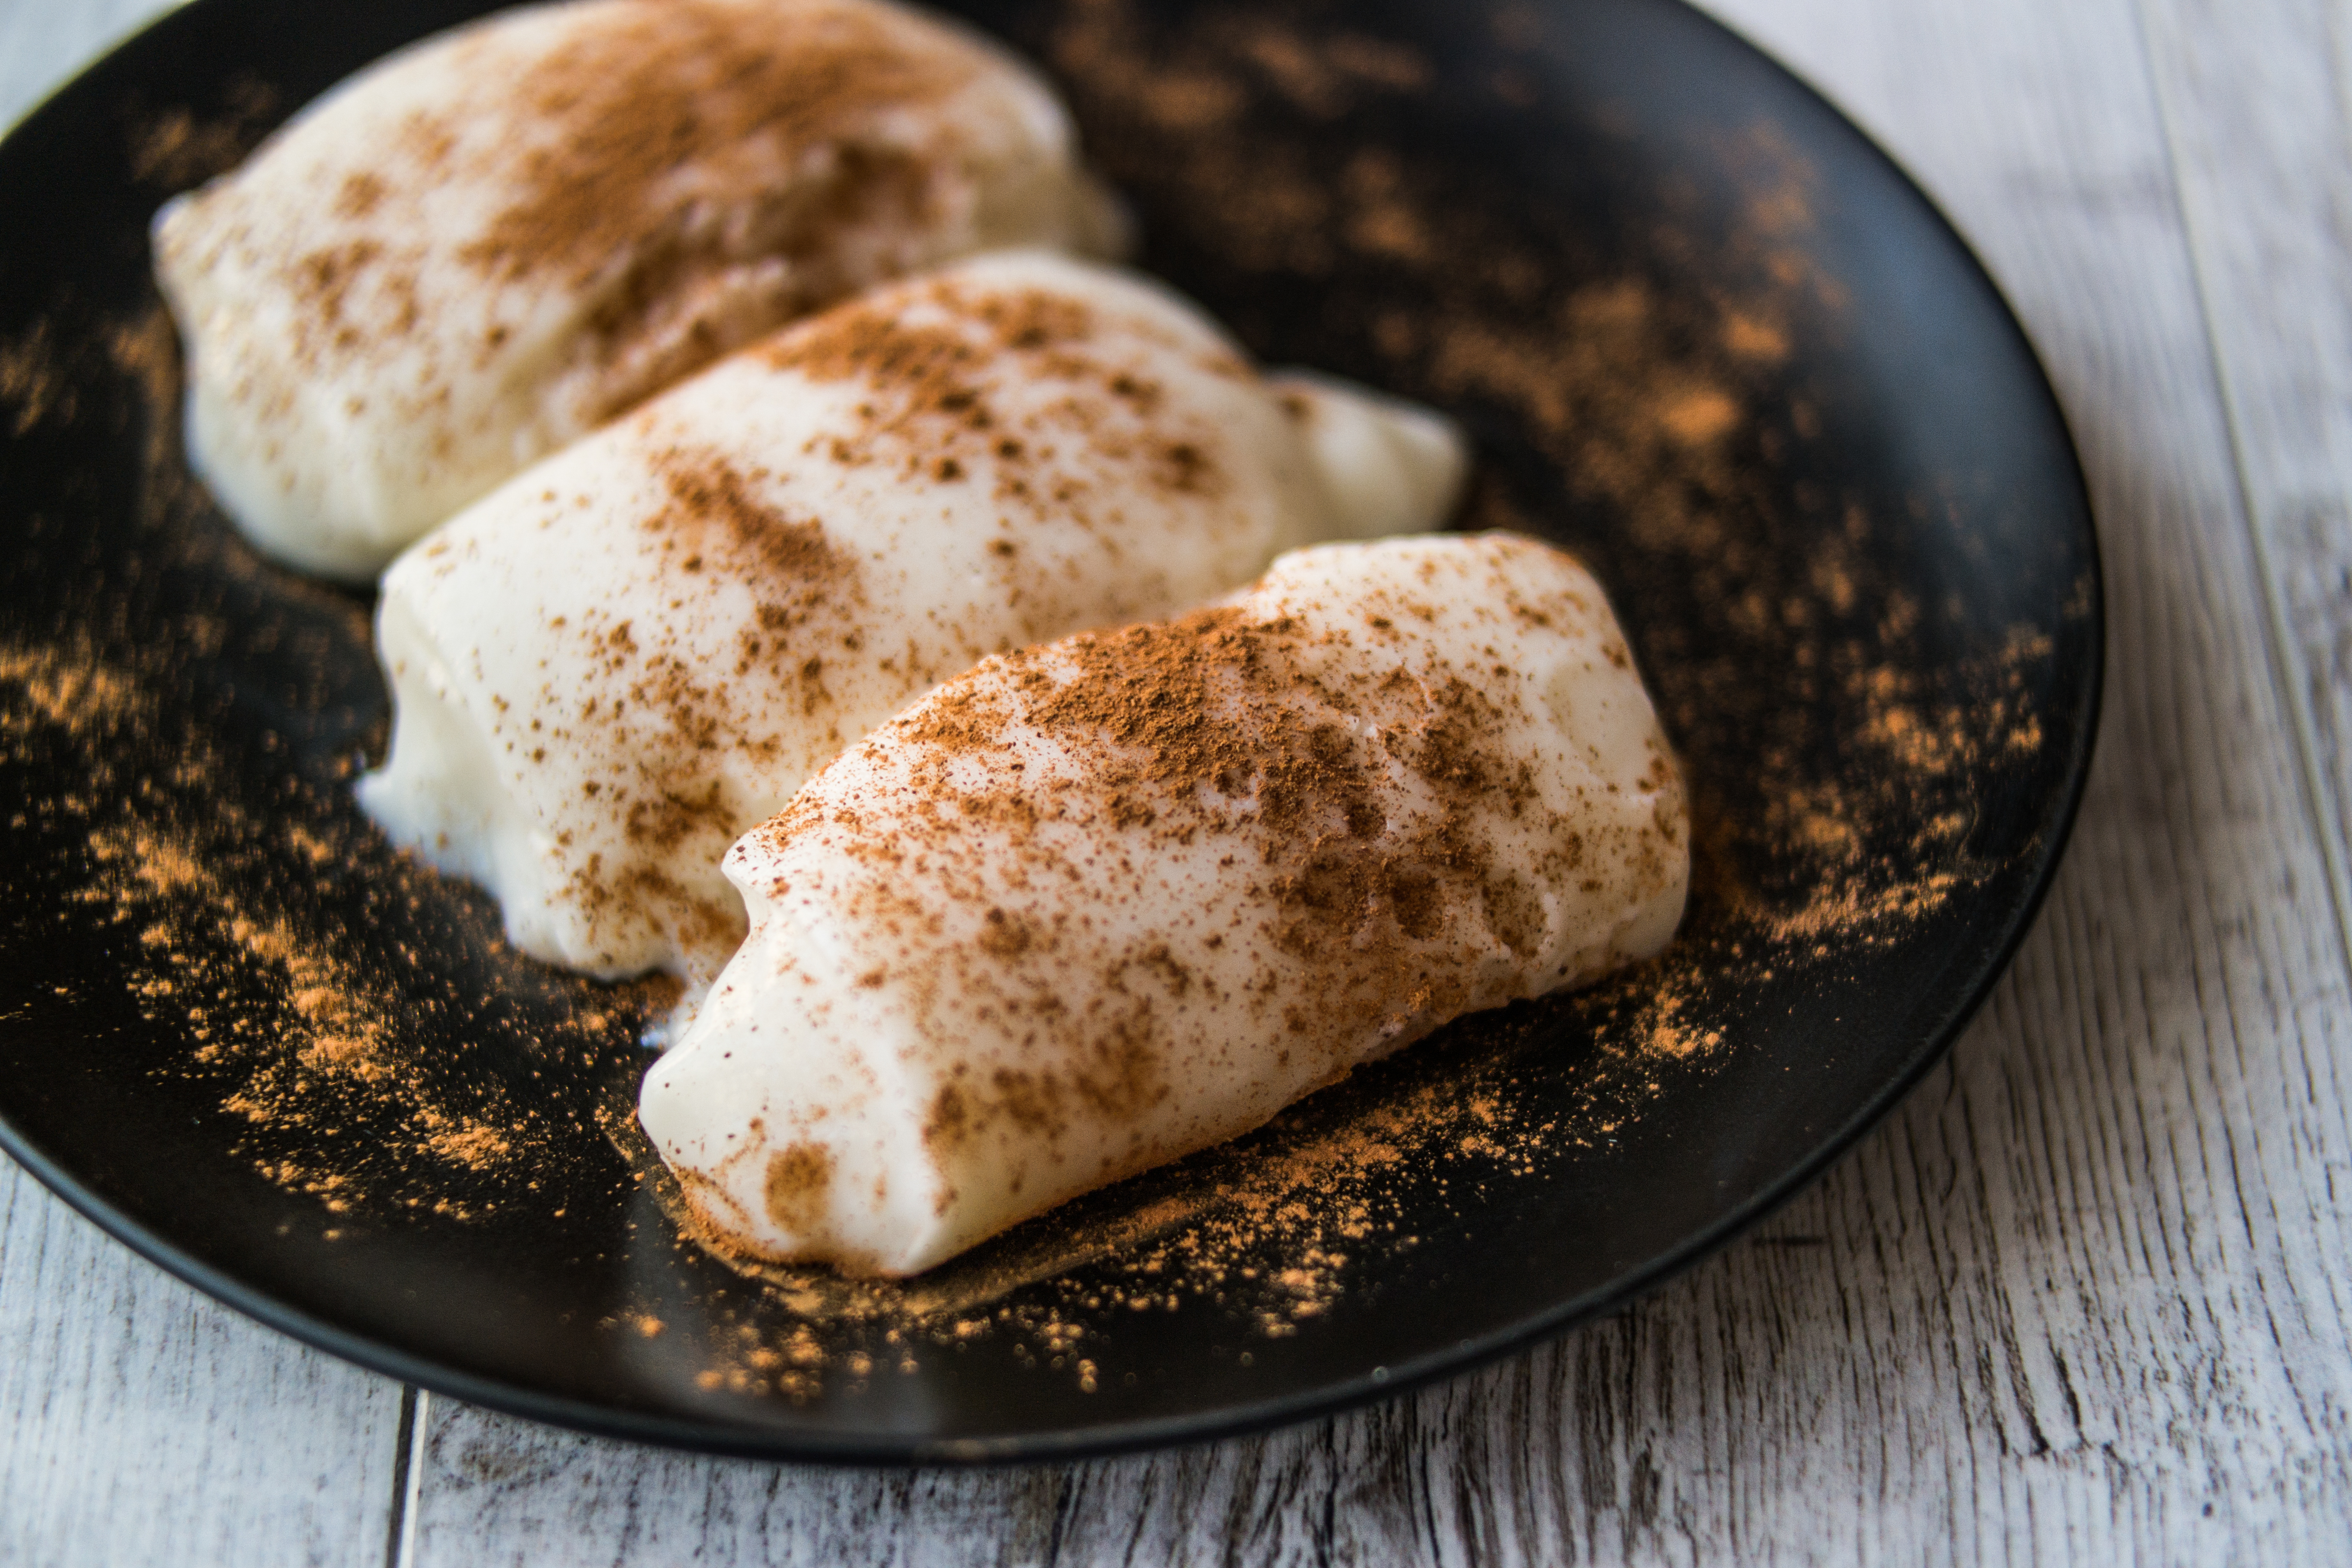 <p><strong>Тавук гогсю /Tavuk gogsu/</strong><br />
Традиционен млечен пудинг, който е познат още на османските султани, а днес се счита за запазен кулинарен подпис на Турция. Парченца пилешко месо, най-често пилешки гърди, се смесват с оризово брашно, мляко, захар и канела. Крайният резултат е десерт с месо, определено странна комбинация.&nbsp;</p>